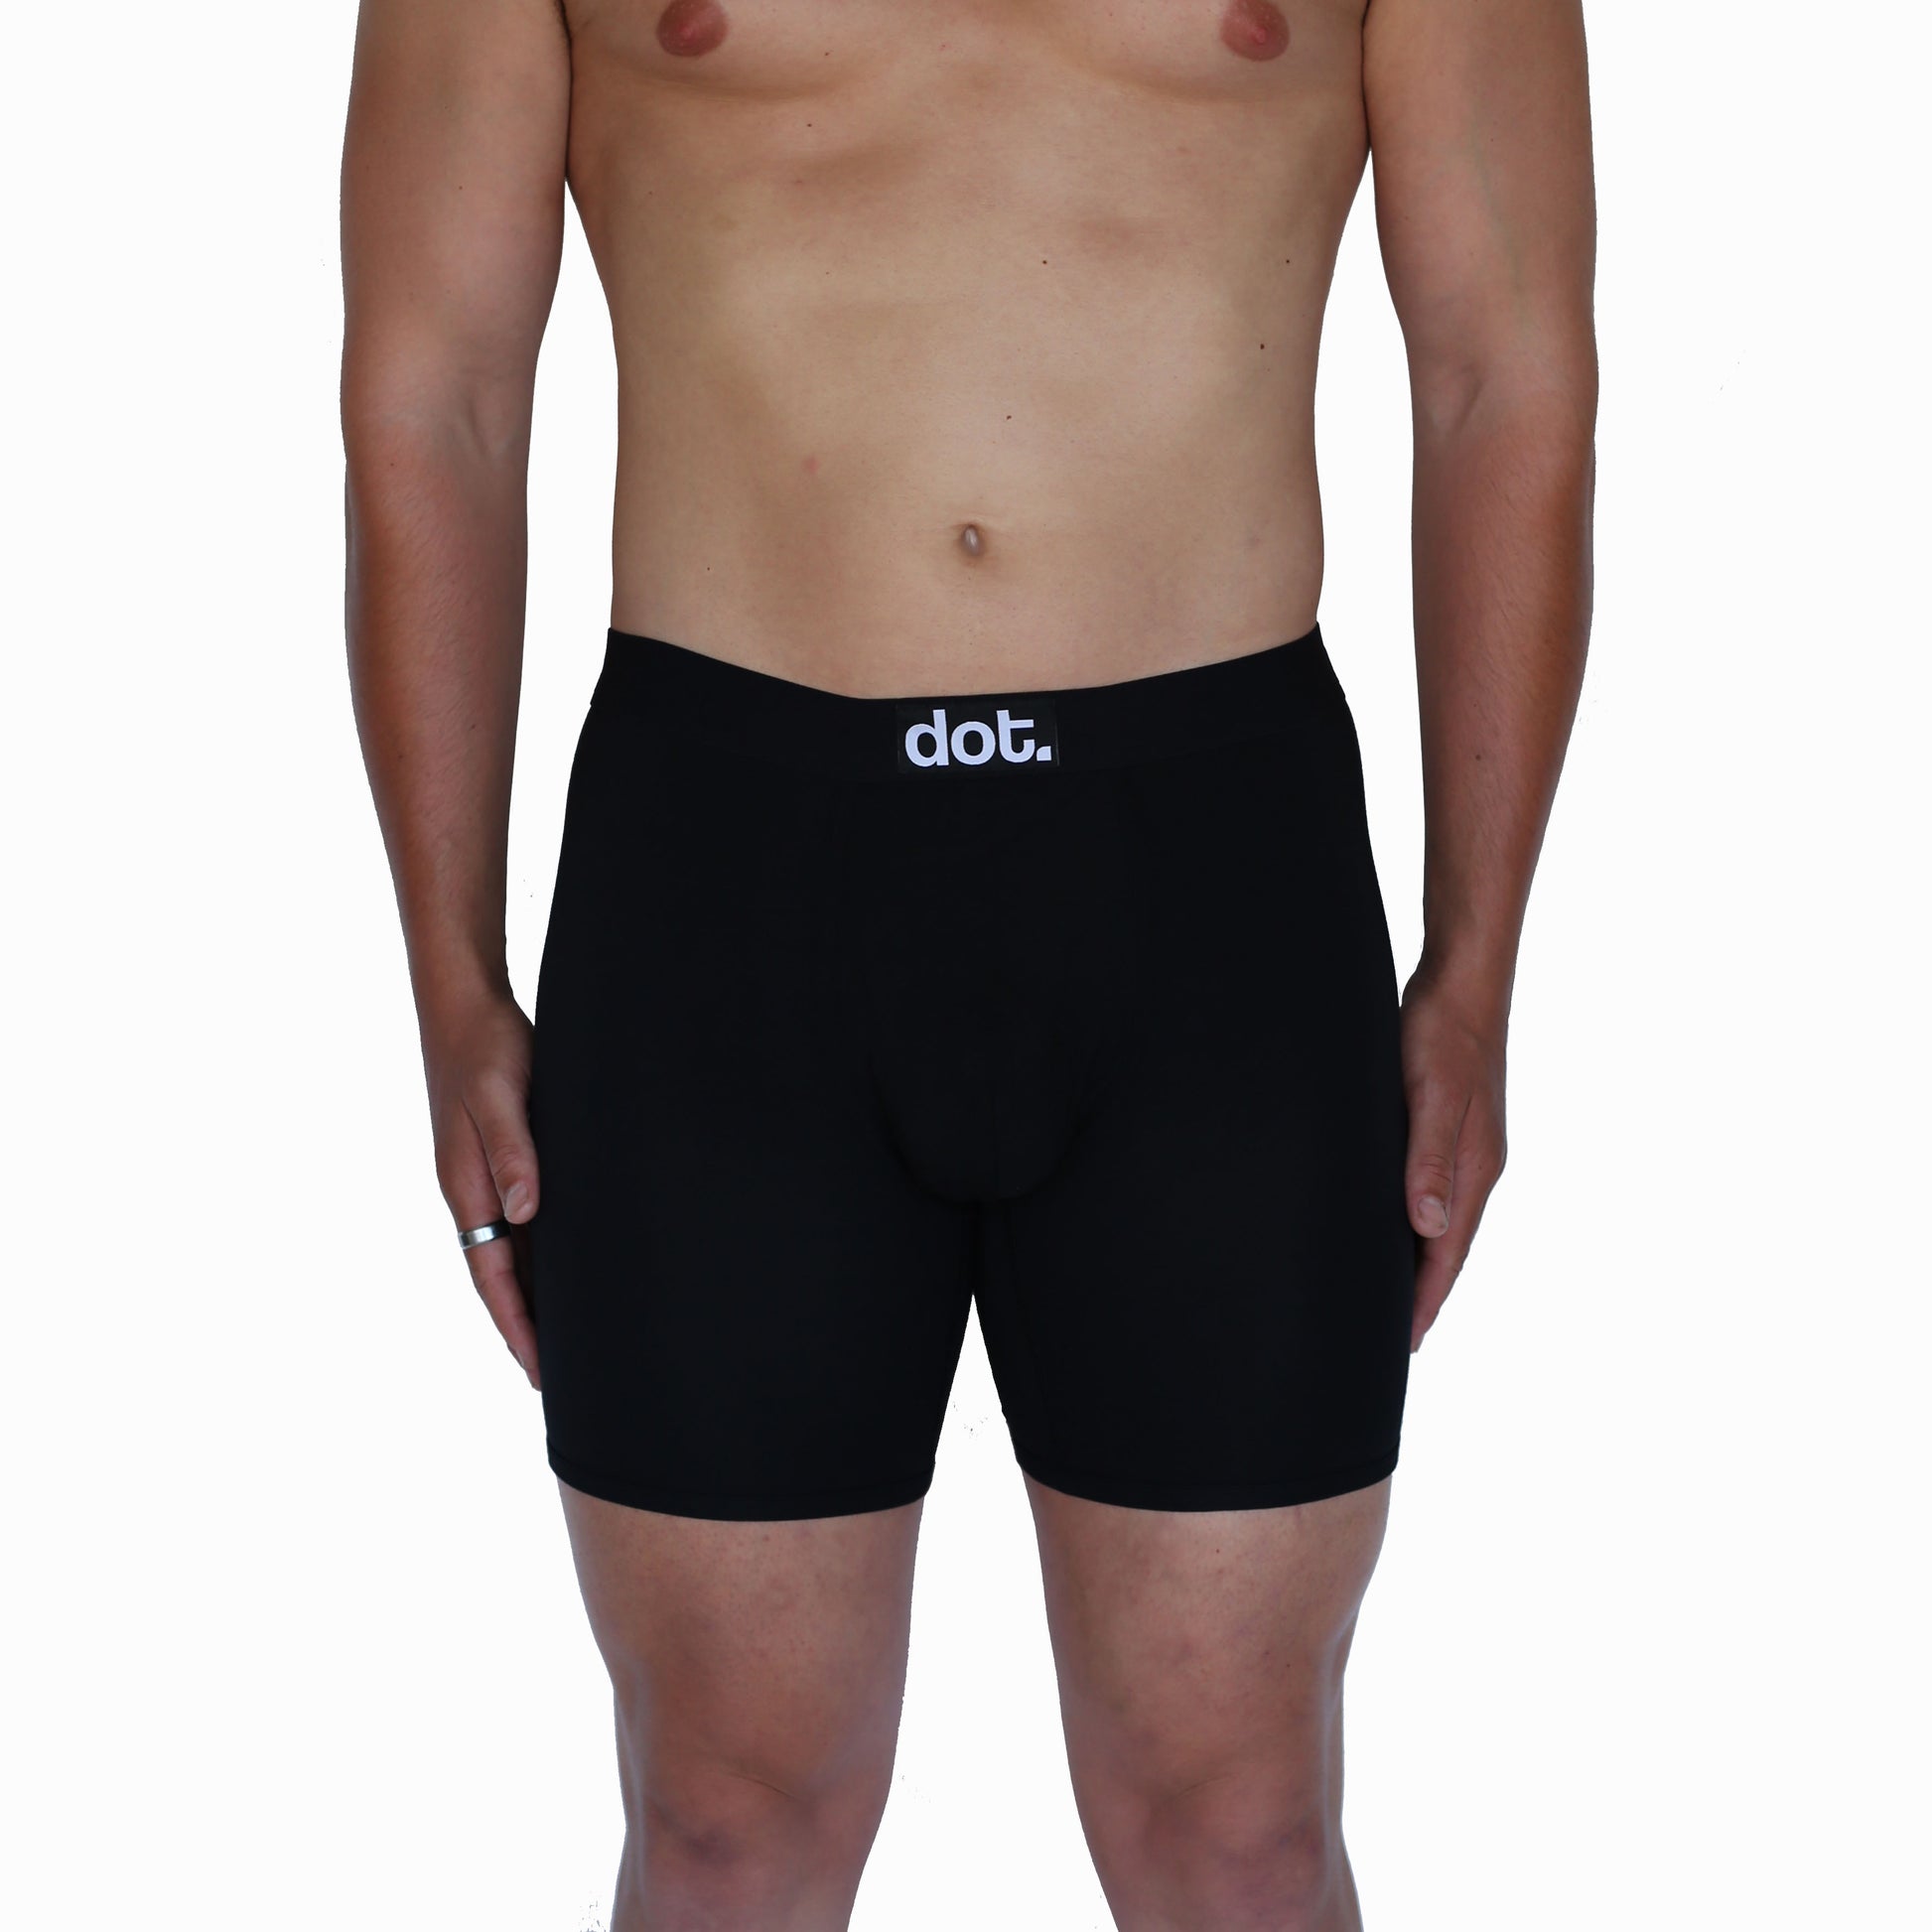 dot. underwear – dotunderwear